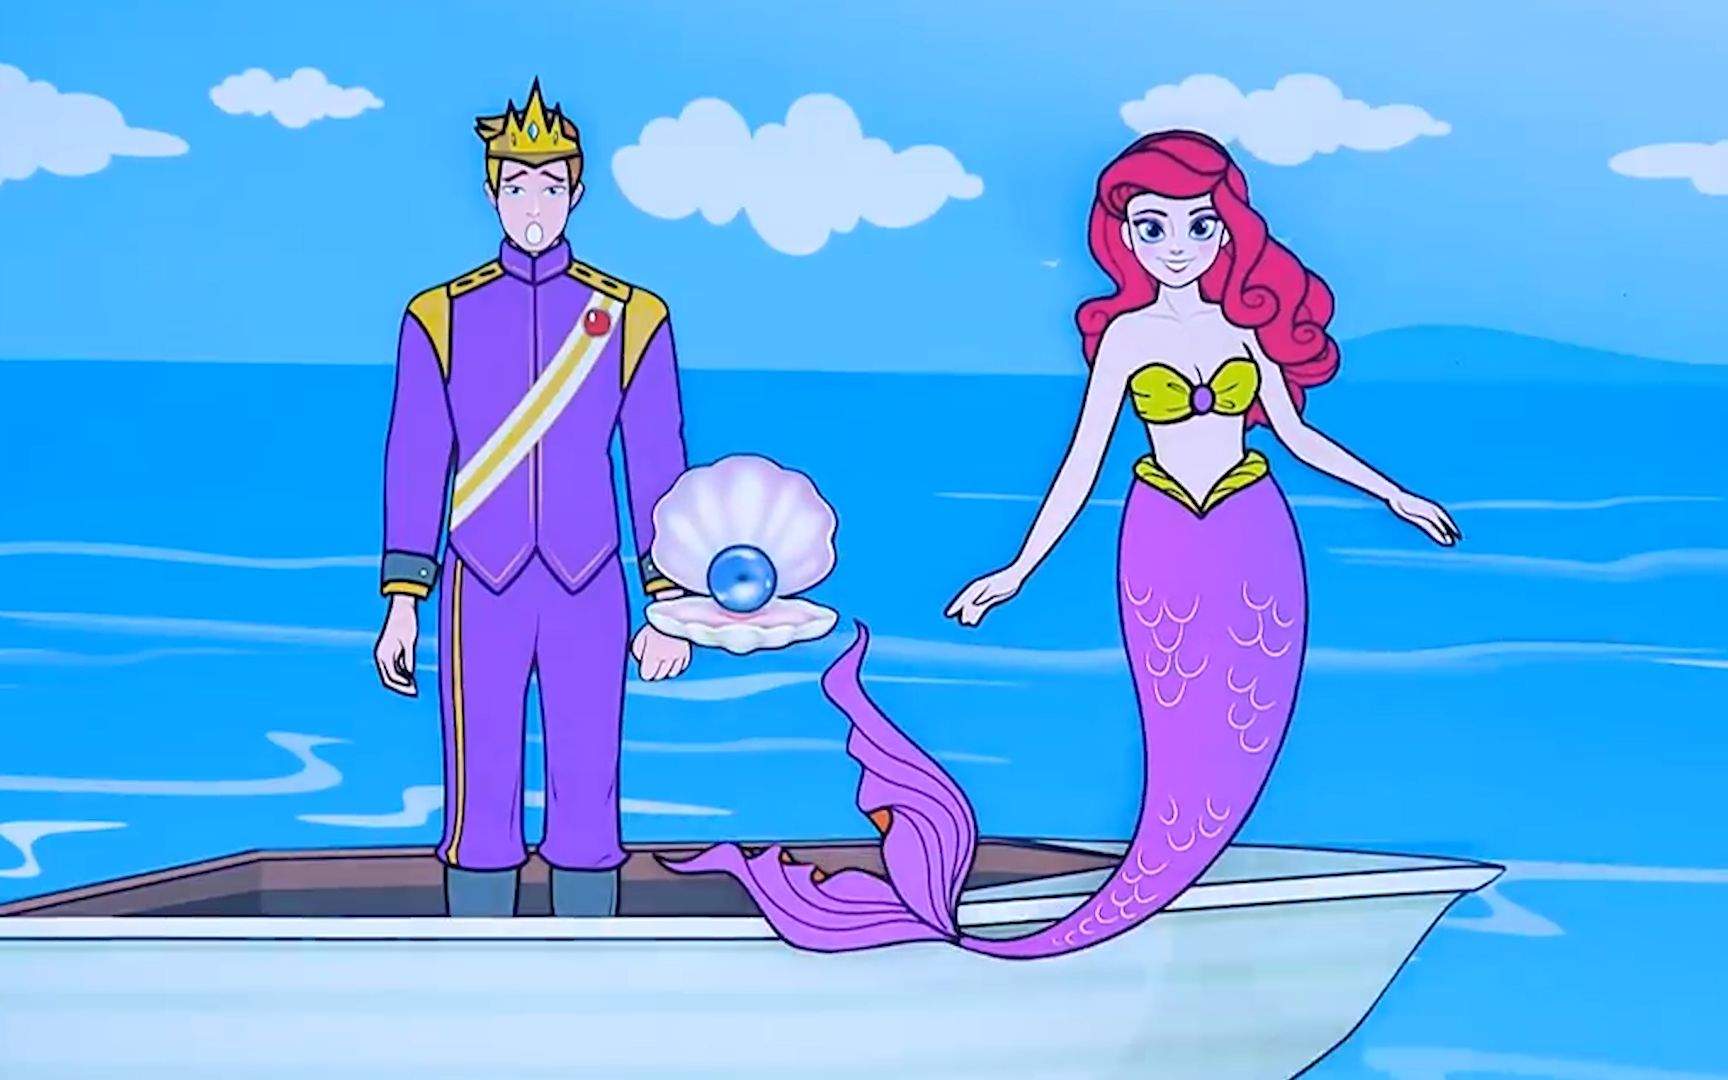 定格动画:美人鱼和王子相爱,美人鱼放弃人鱼身份,和王子相聚啦